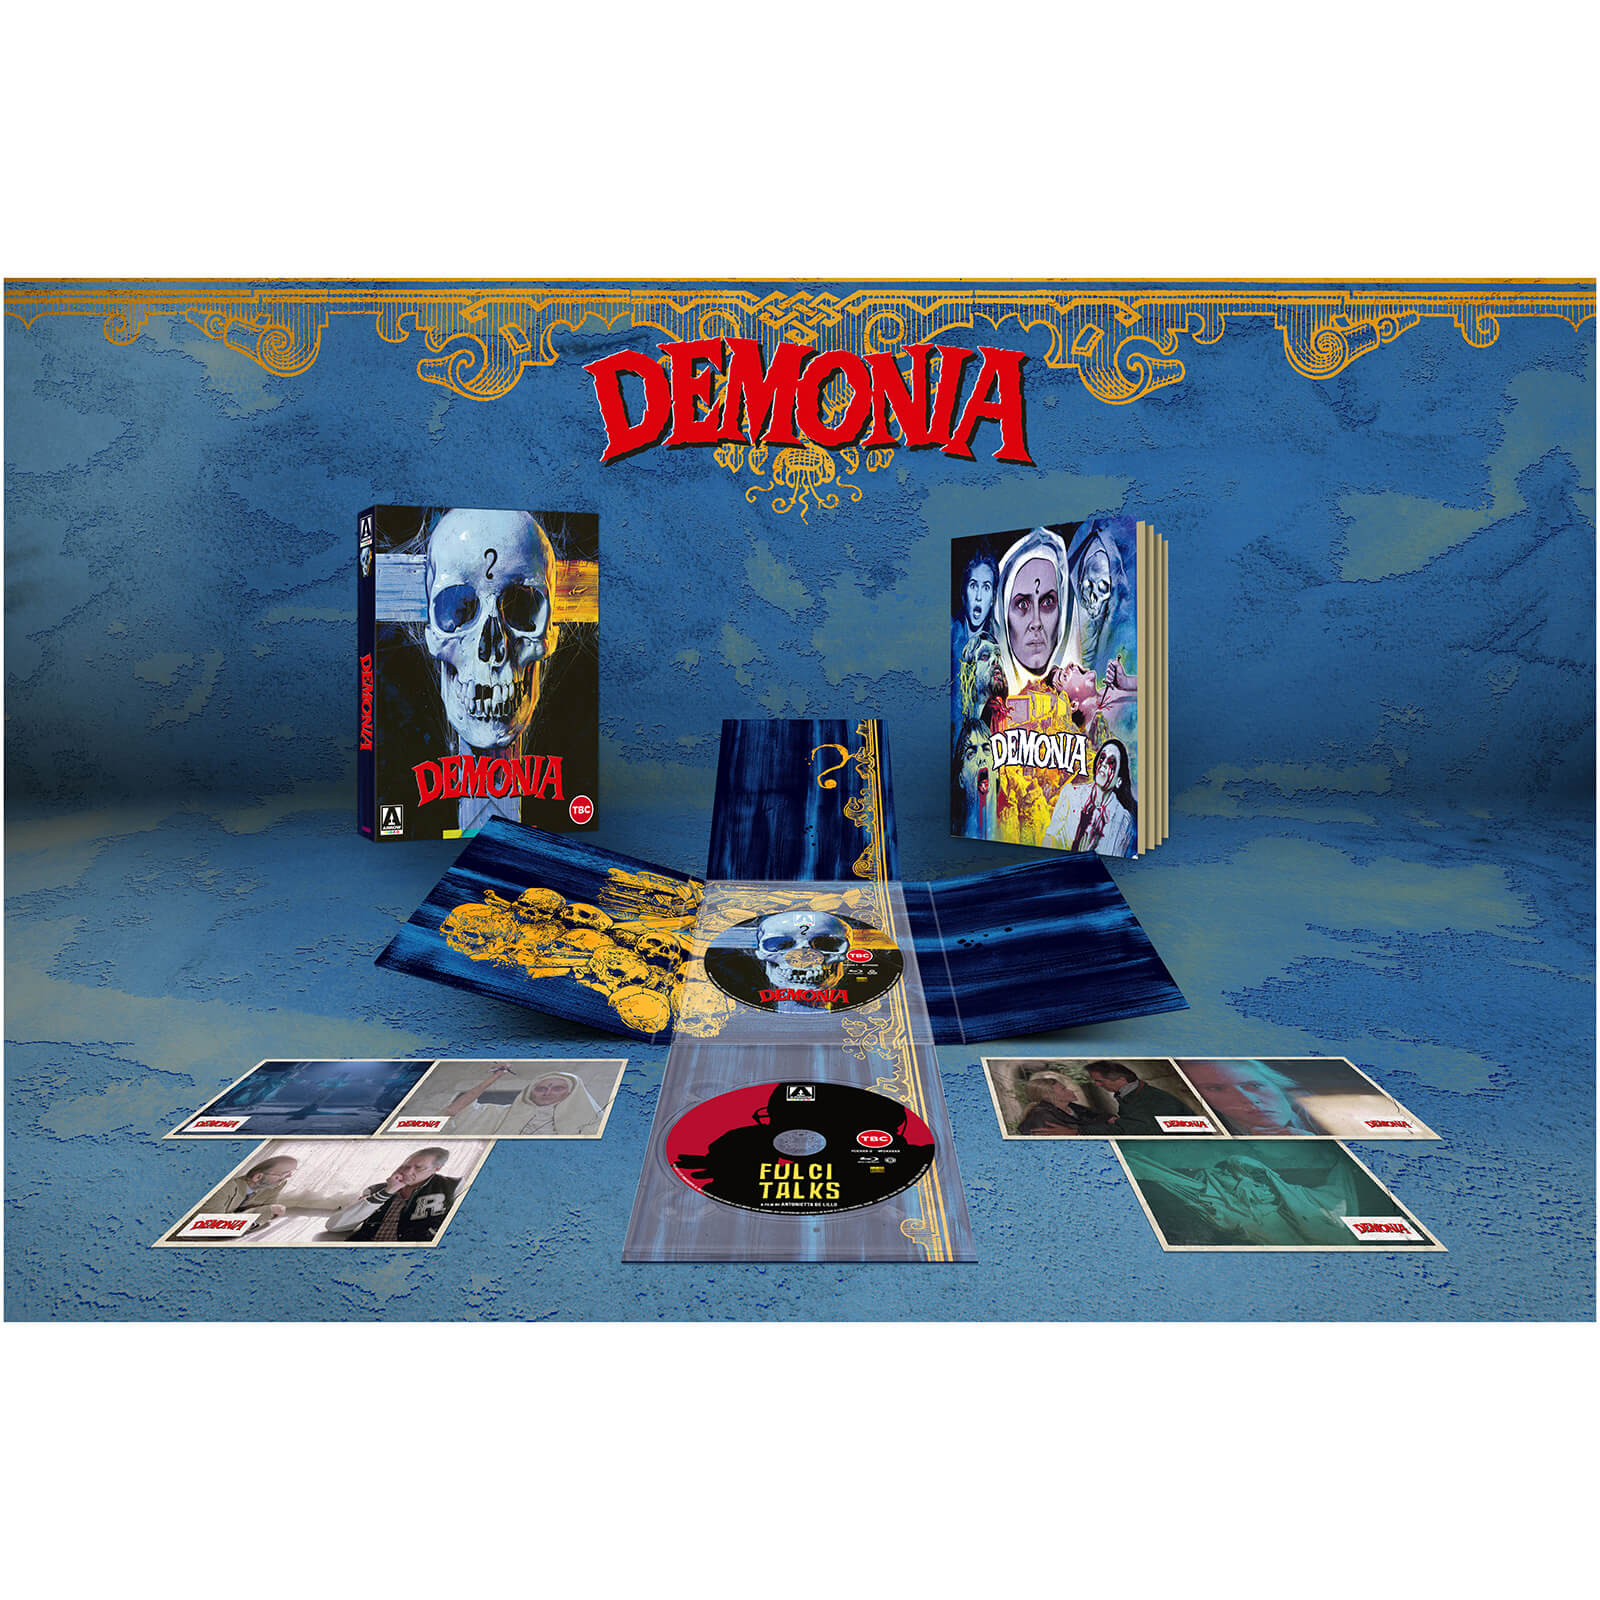 Demonia Limited Edition von Arrow Video